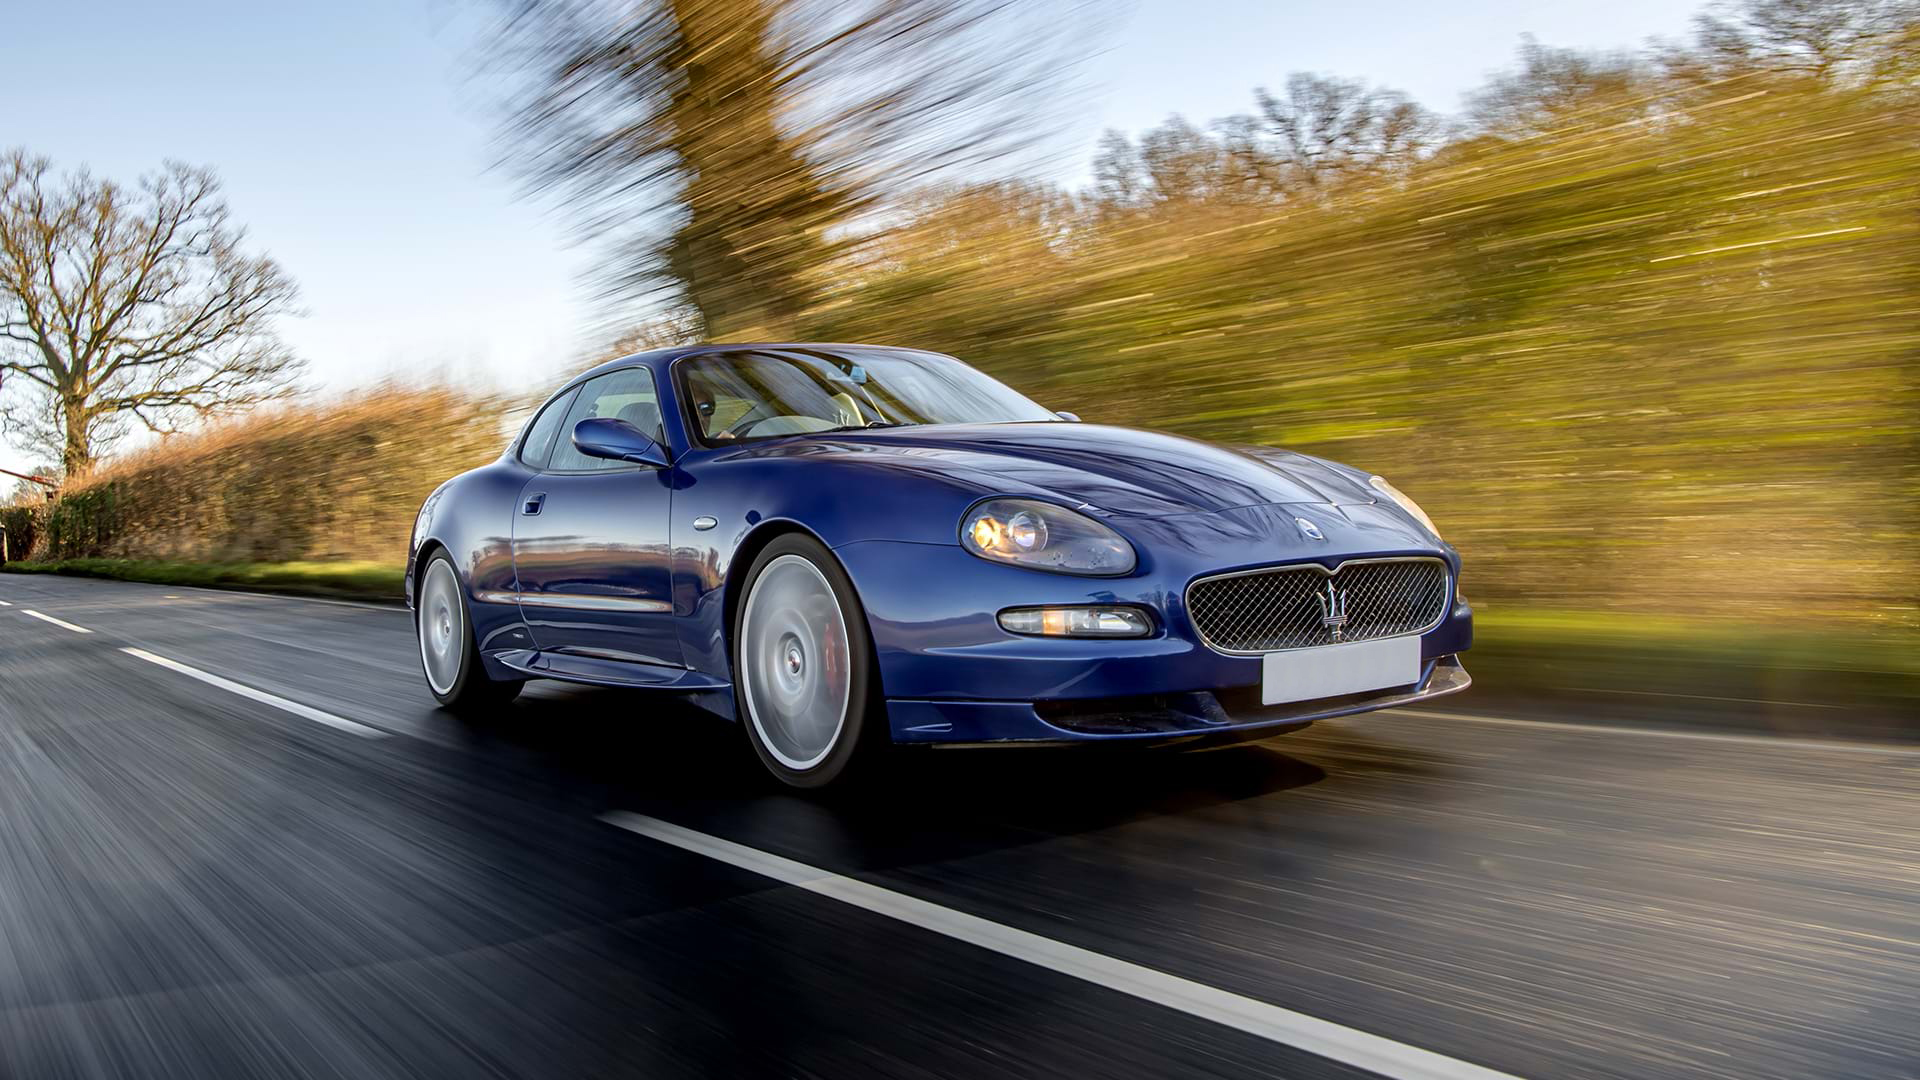 Klassischer blauer Maserati GranSport fährt auf einer Landstraße unter blauem Himmel.